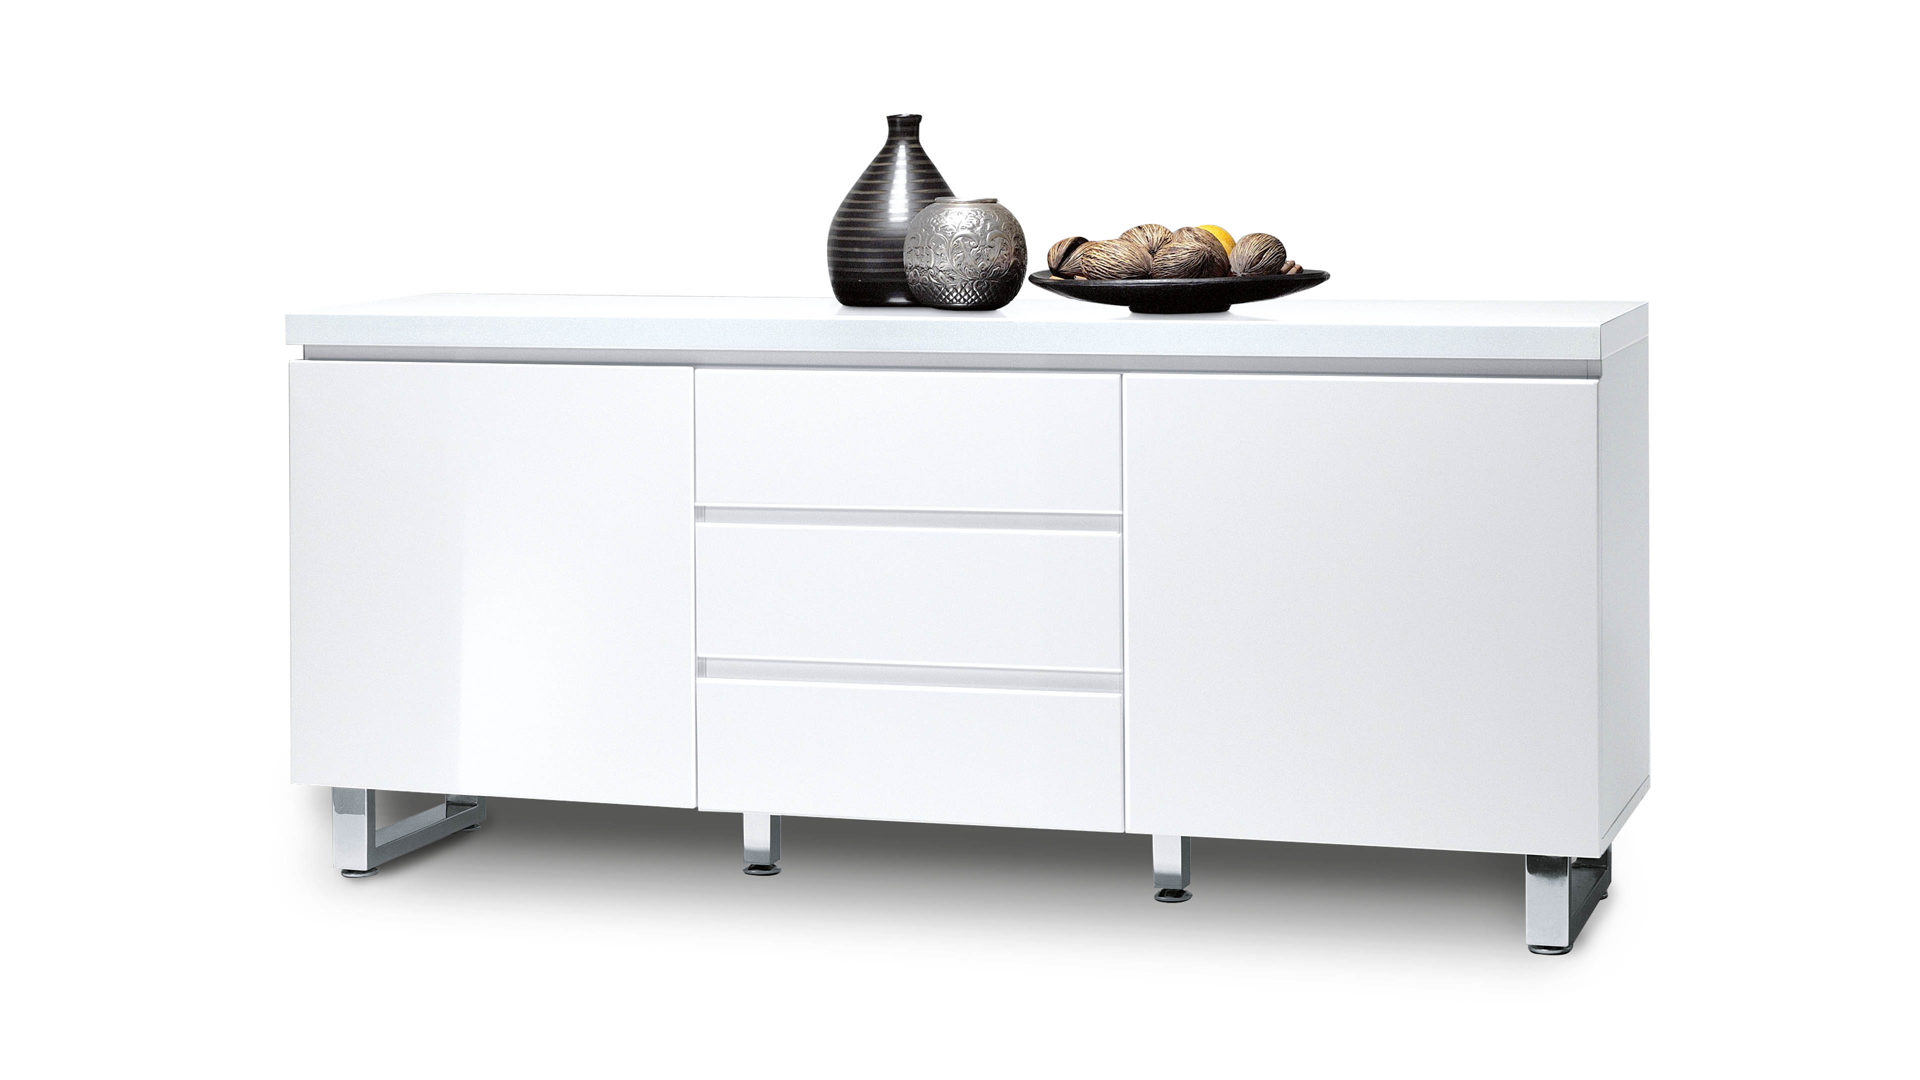 Sideboard Mca furniture aus Holz in Weiß Sideboard, eine Kommode mit eleganter Note weiße Lackfronten & verchromte Metallfüße - zwei Türen, drei Schubladen